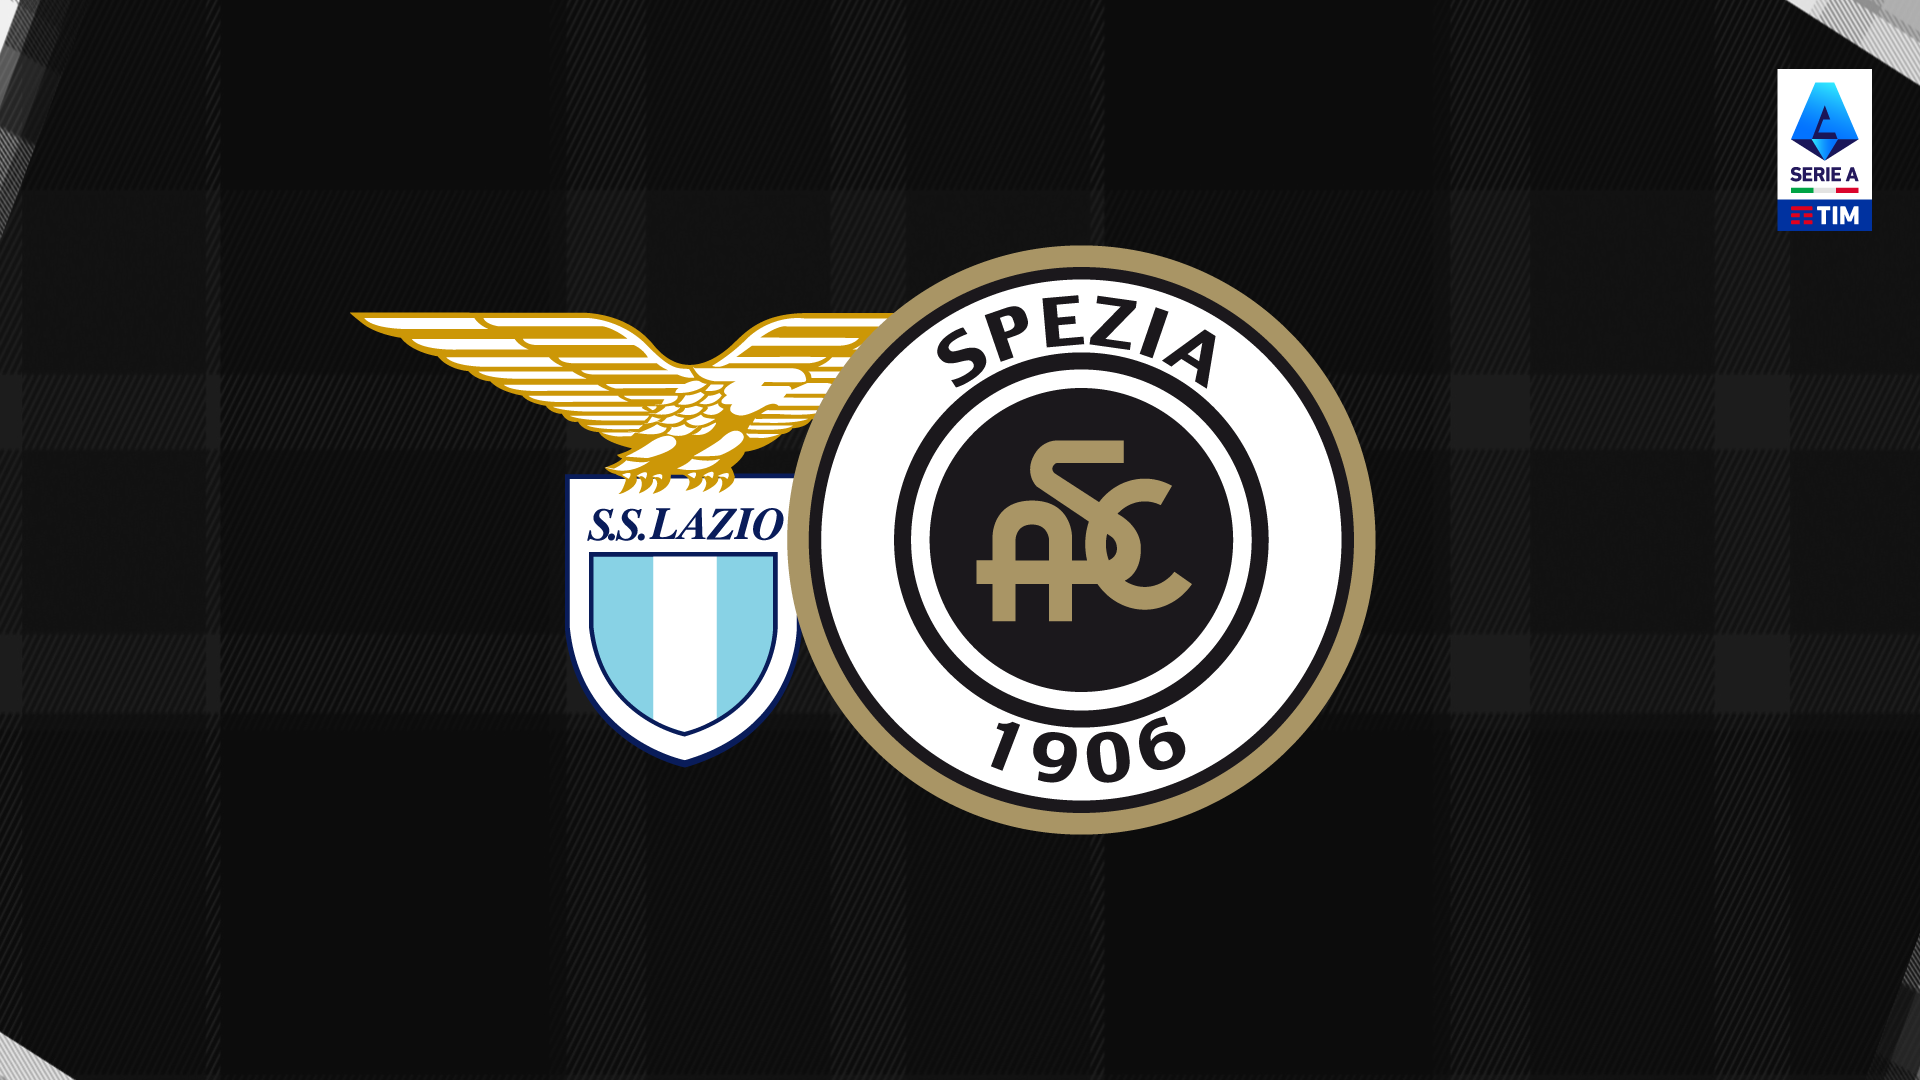 Lazio-Spezia: presale available for the guest sector